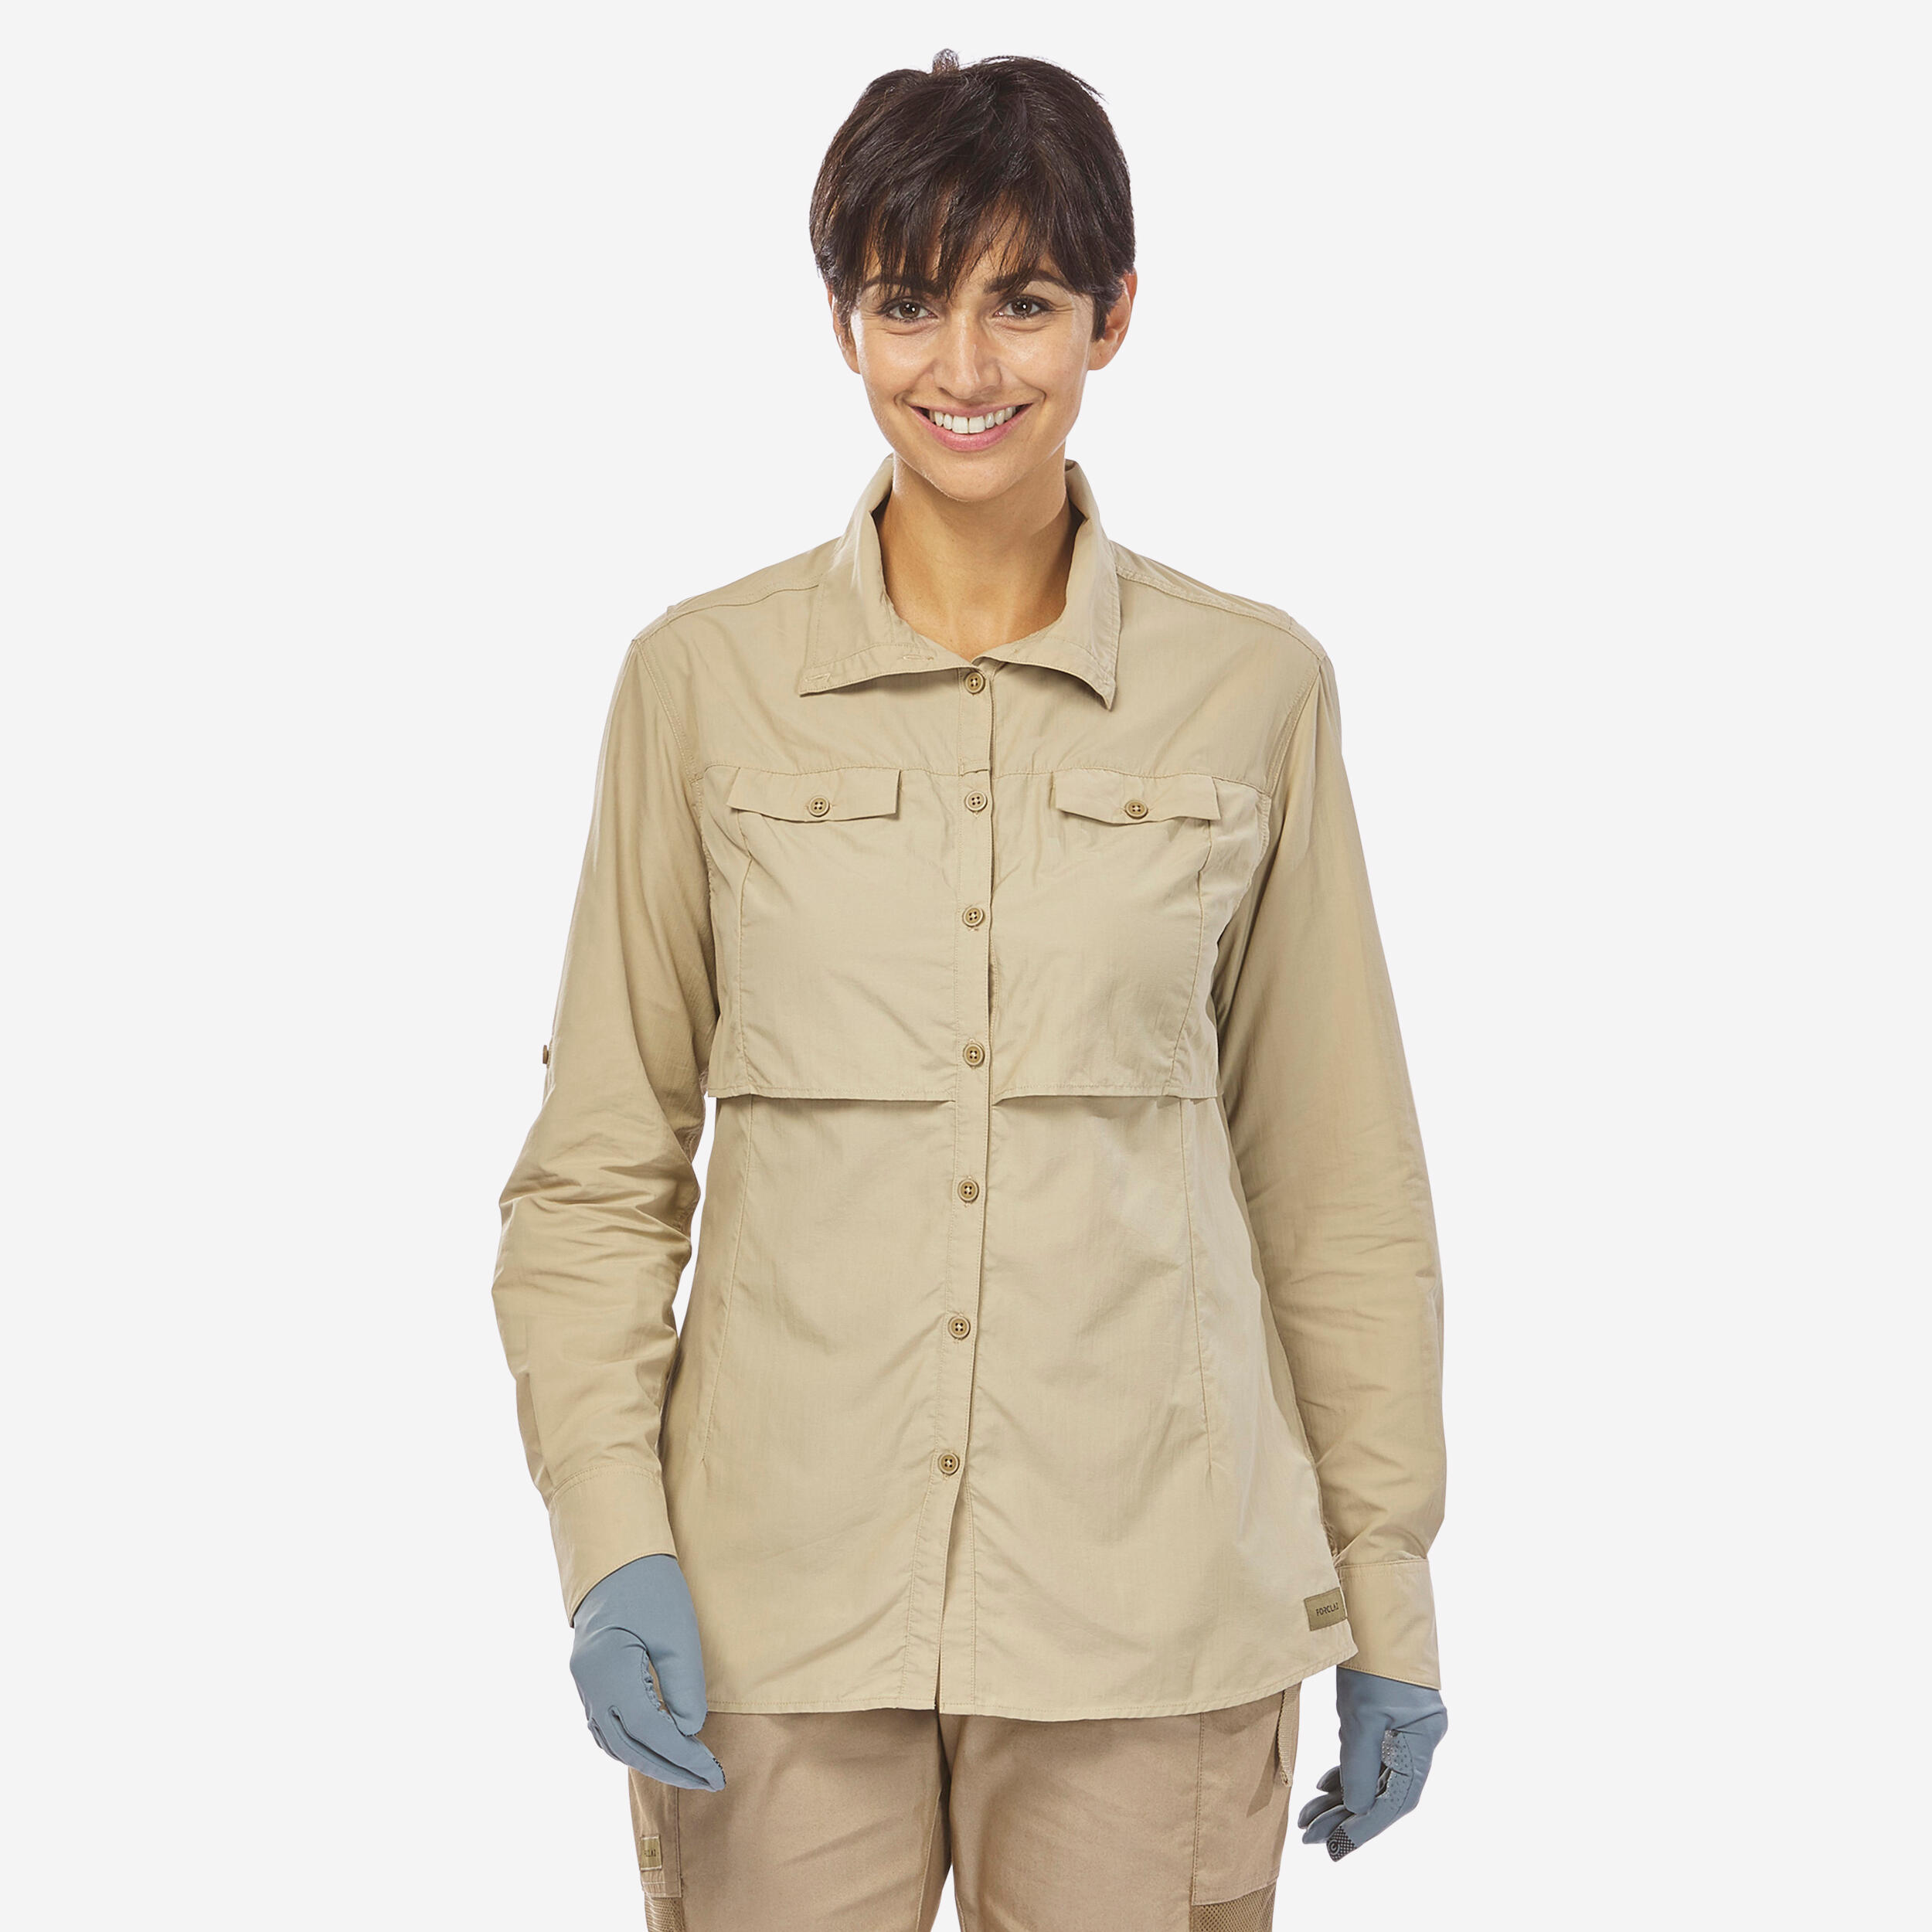 Forclaz Women's Anti-uv Long-sleeved Desert Trekking Shirt Desert 900 - Beige